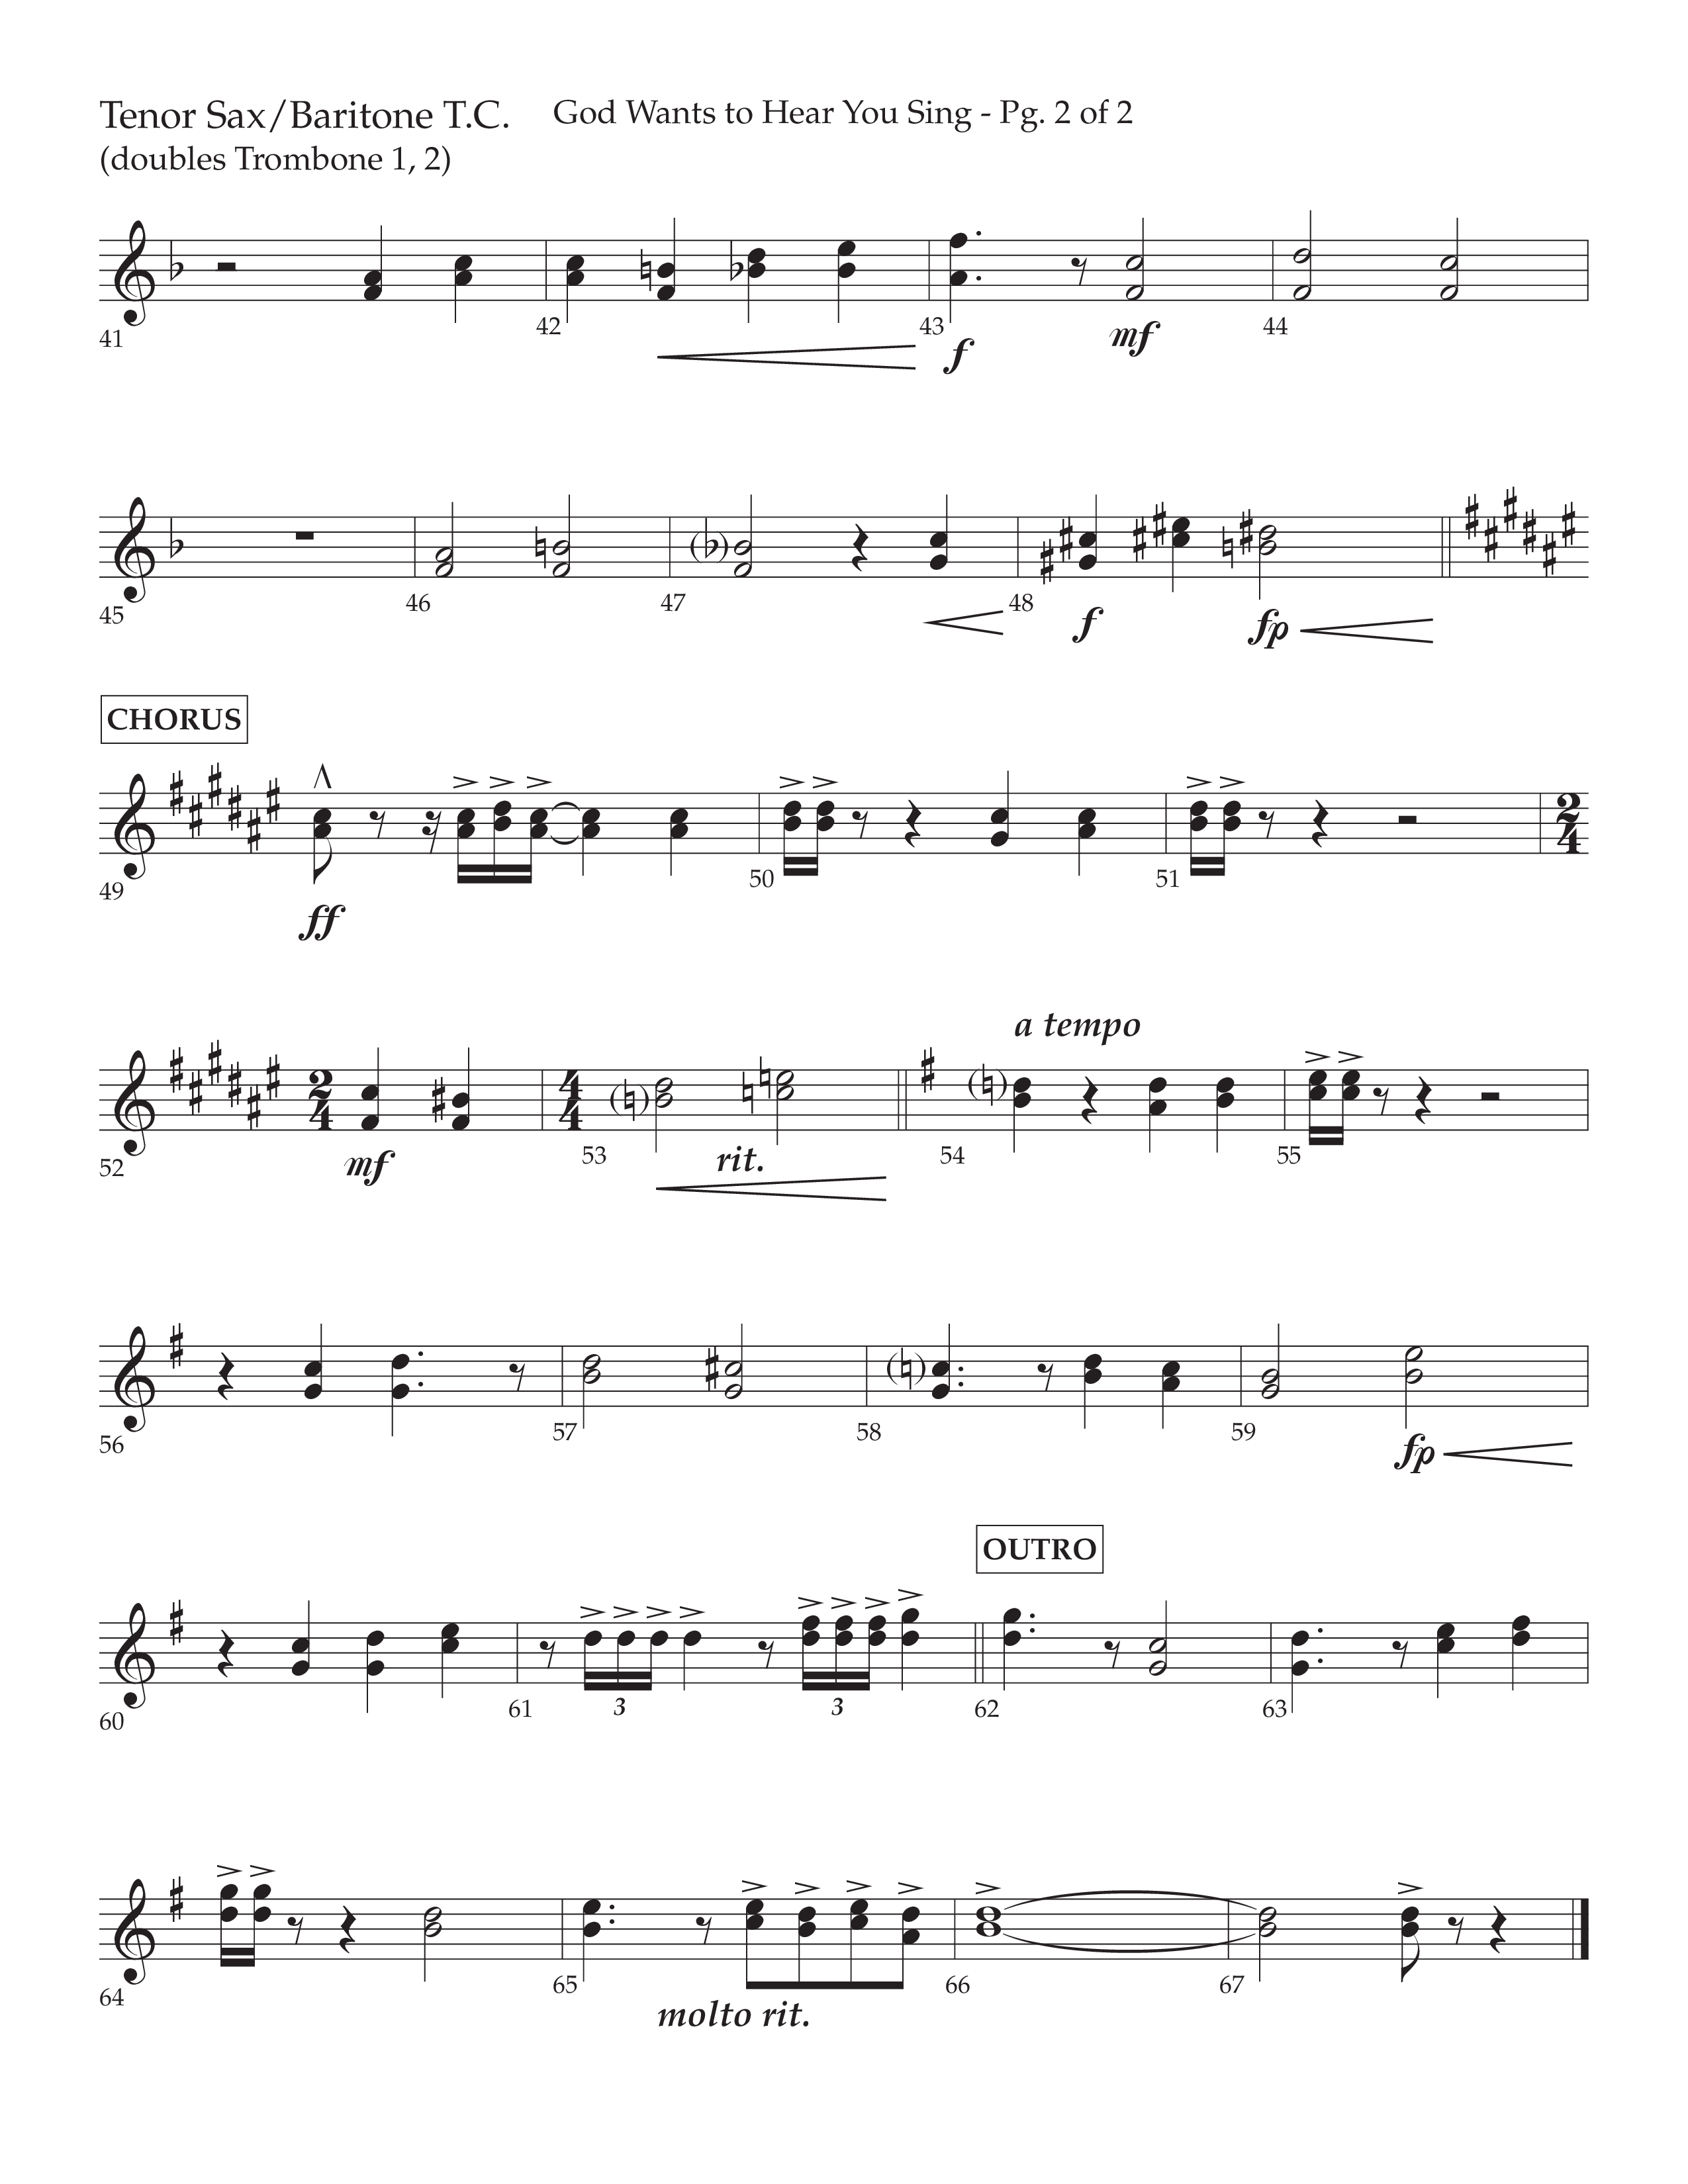 God Wants To Hear You Sing (Choral Anthem SATB) Tenor Sax/Baritone T.C. (Lifeway Choral / Arr. Bradley Knight)